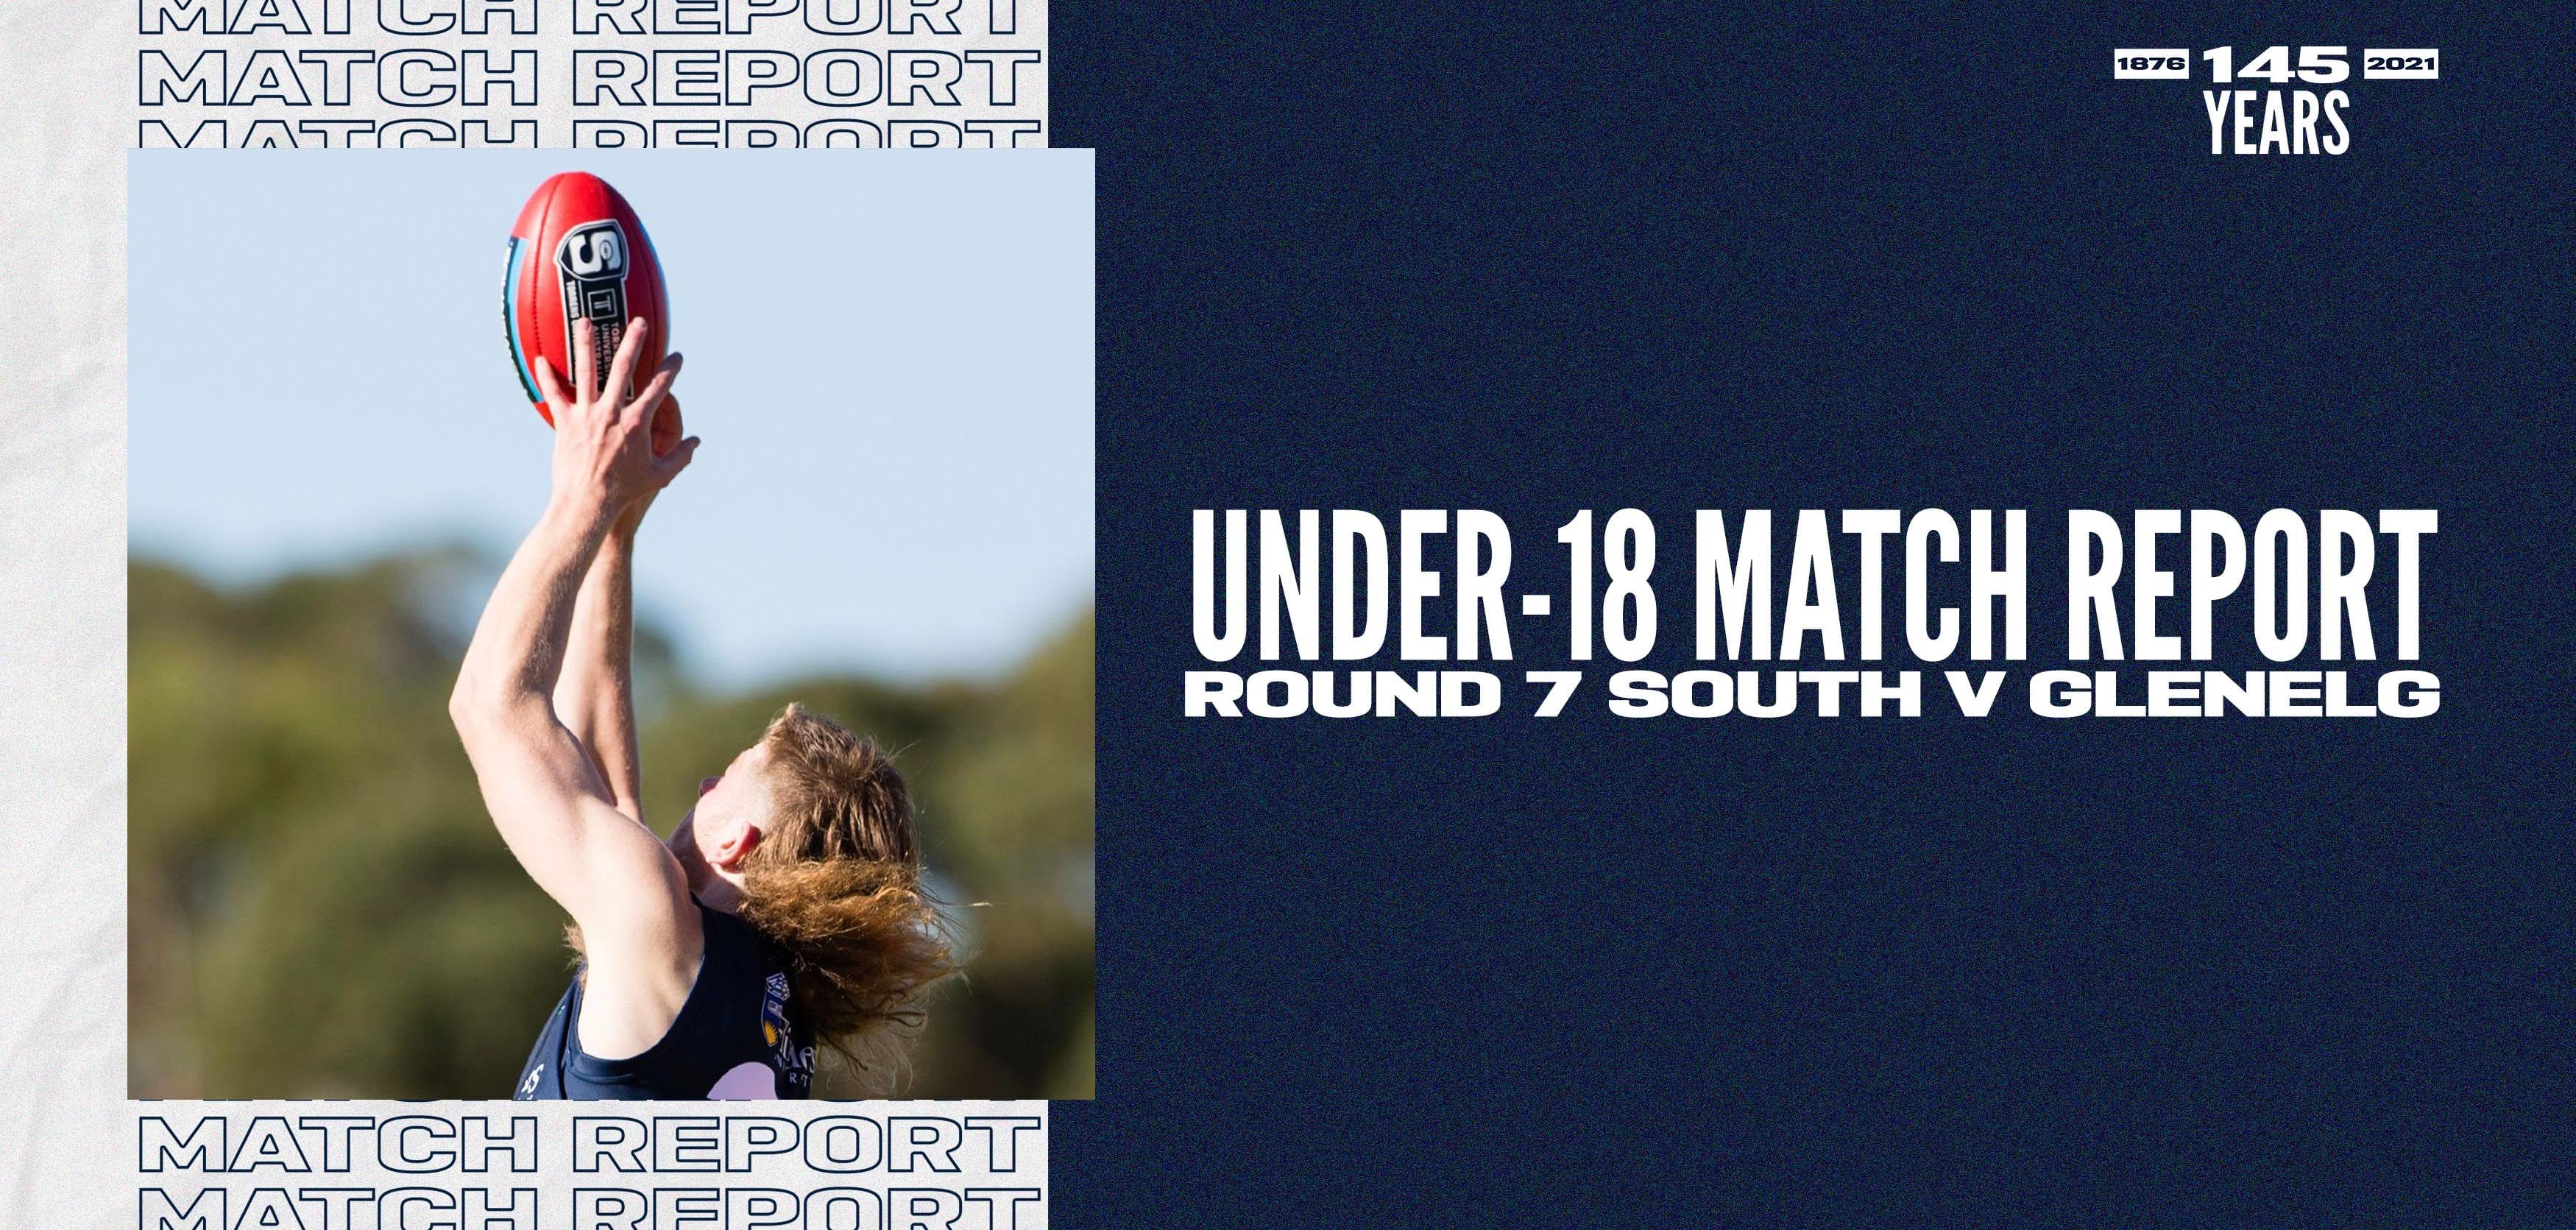 Under-18 Match Report: Round 7 vs Glenelg